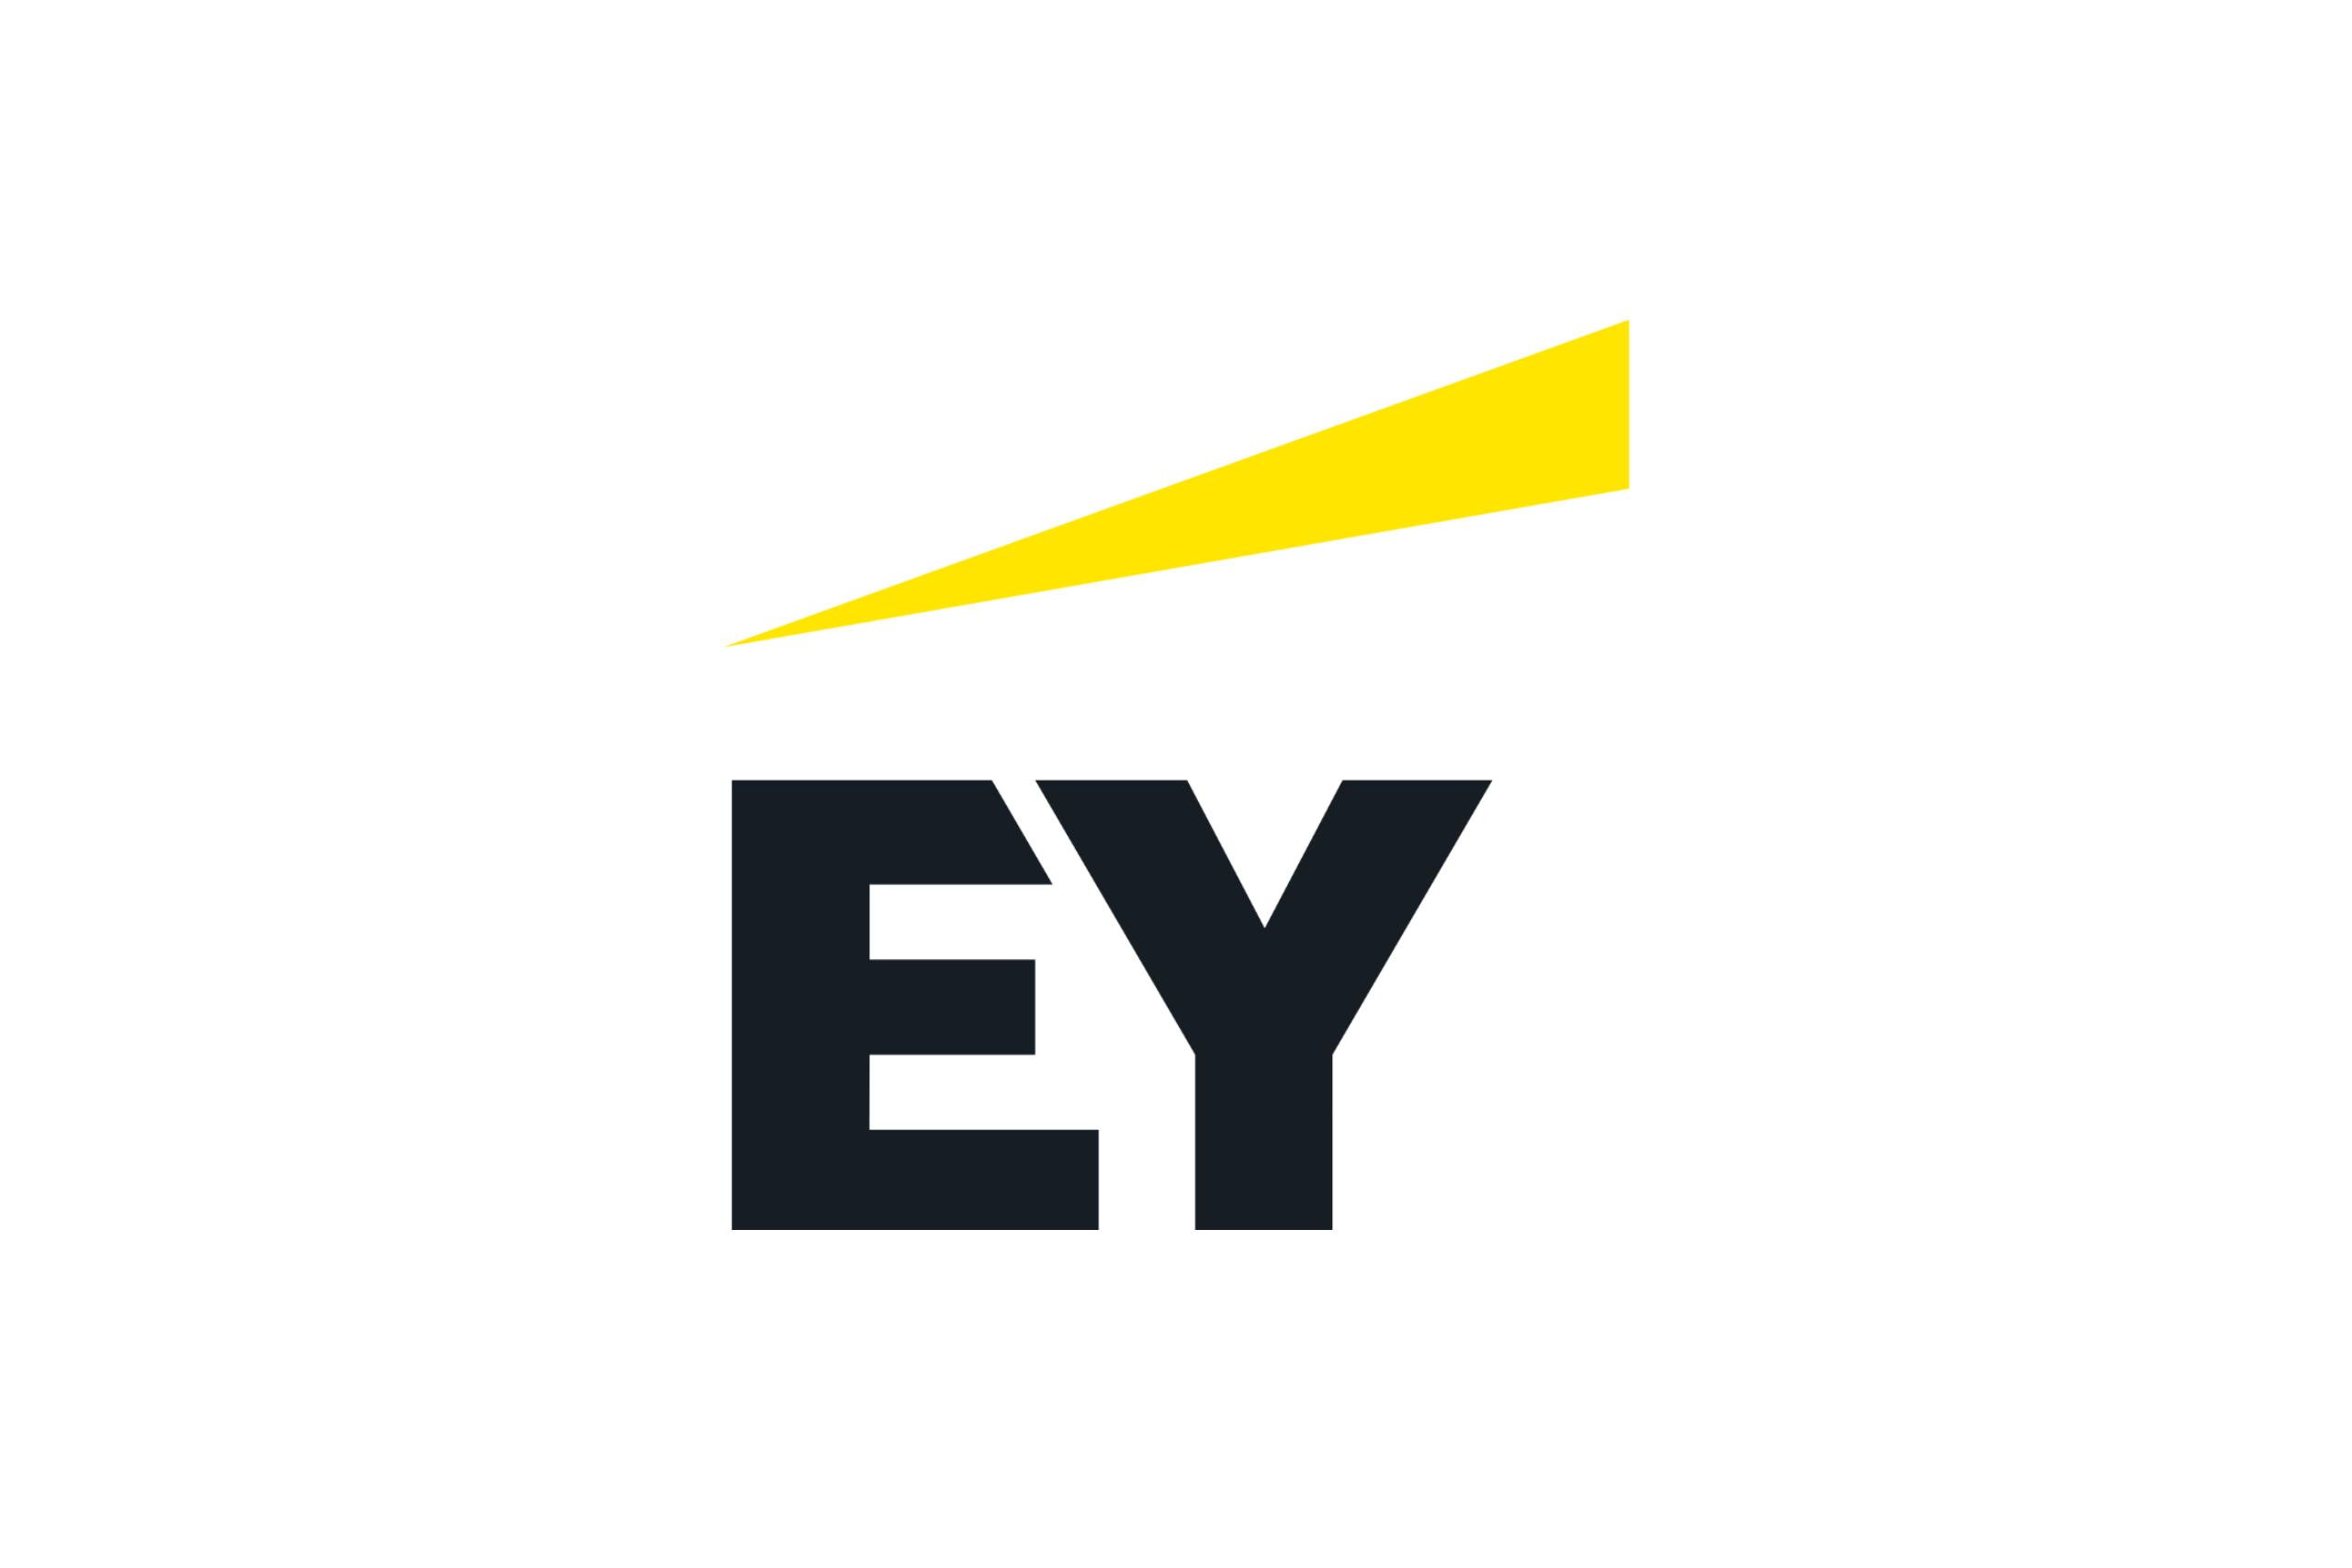 ey-logo-2